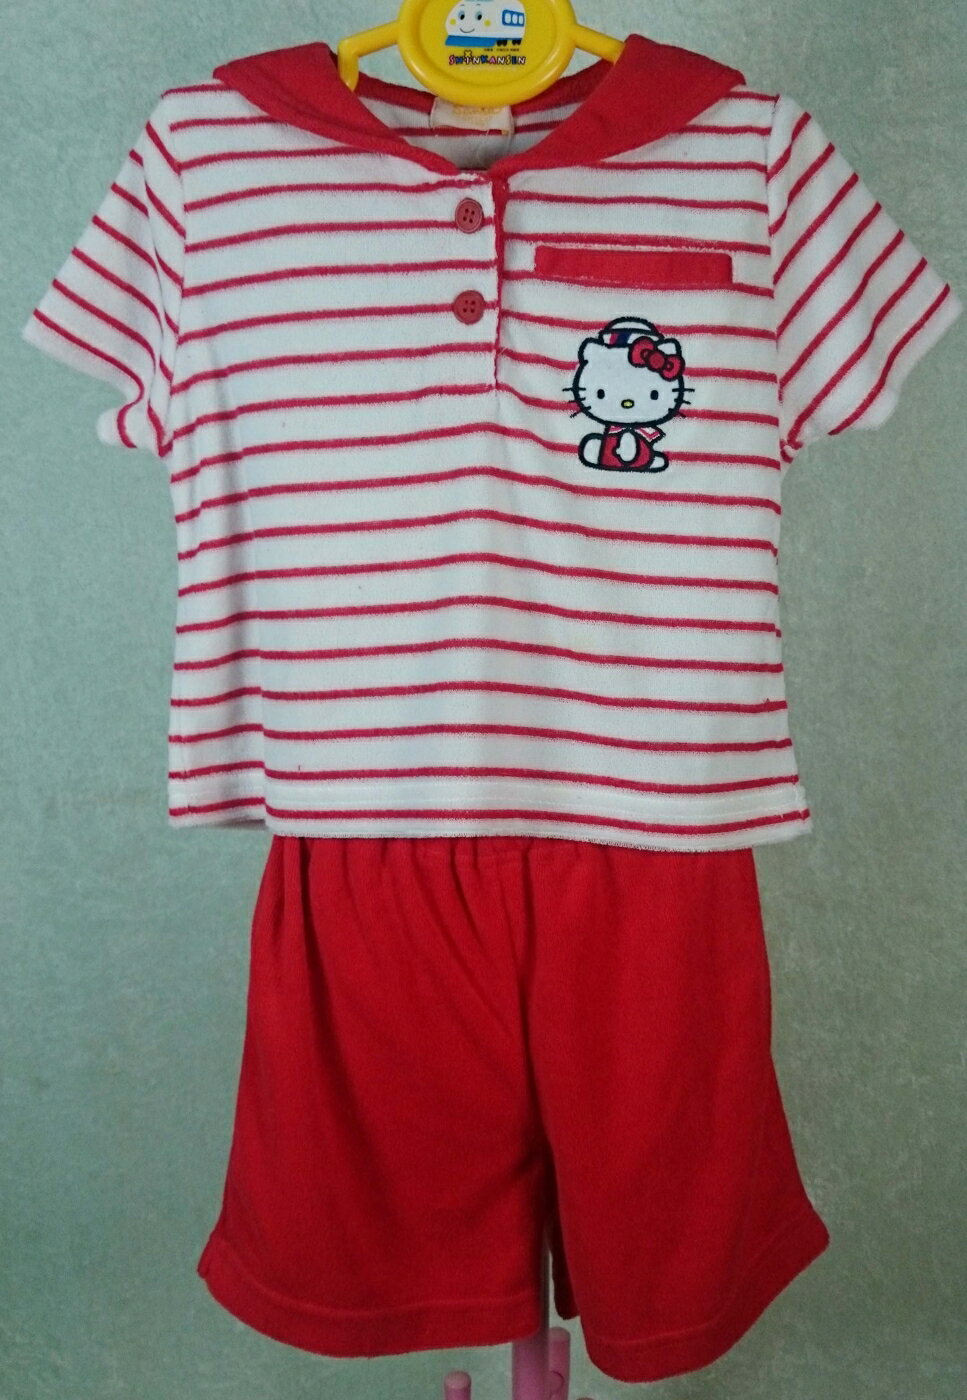 【震撼精品百貨】Hello Kitty 凱蒂貓 童裝 衣褲組 紅條紋 震撼日式精品百貨